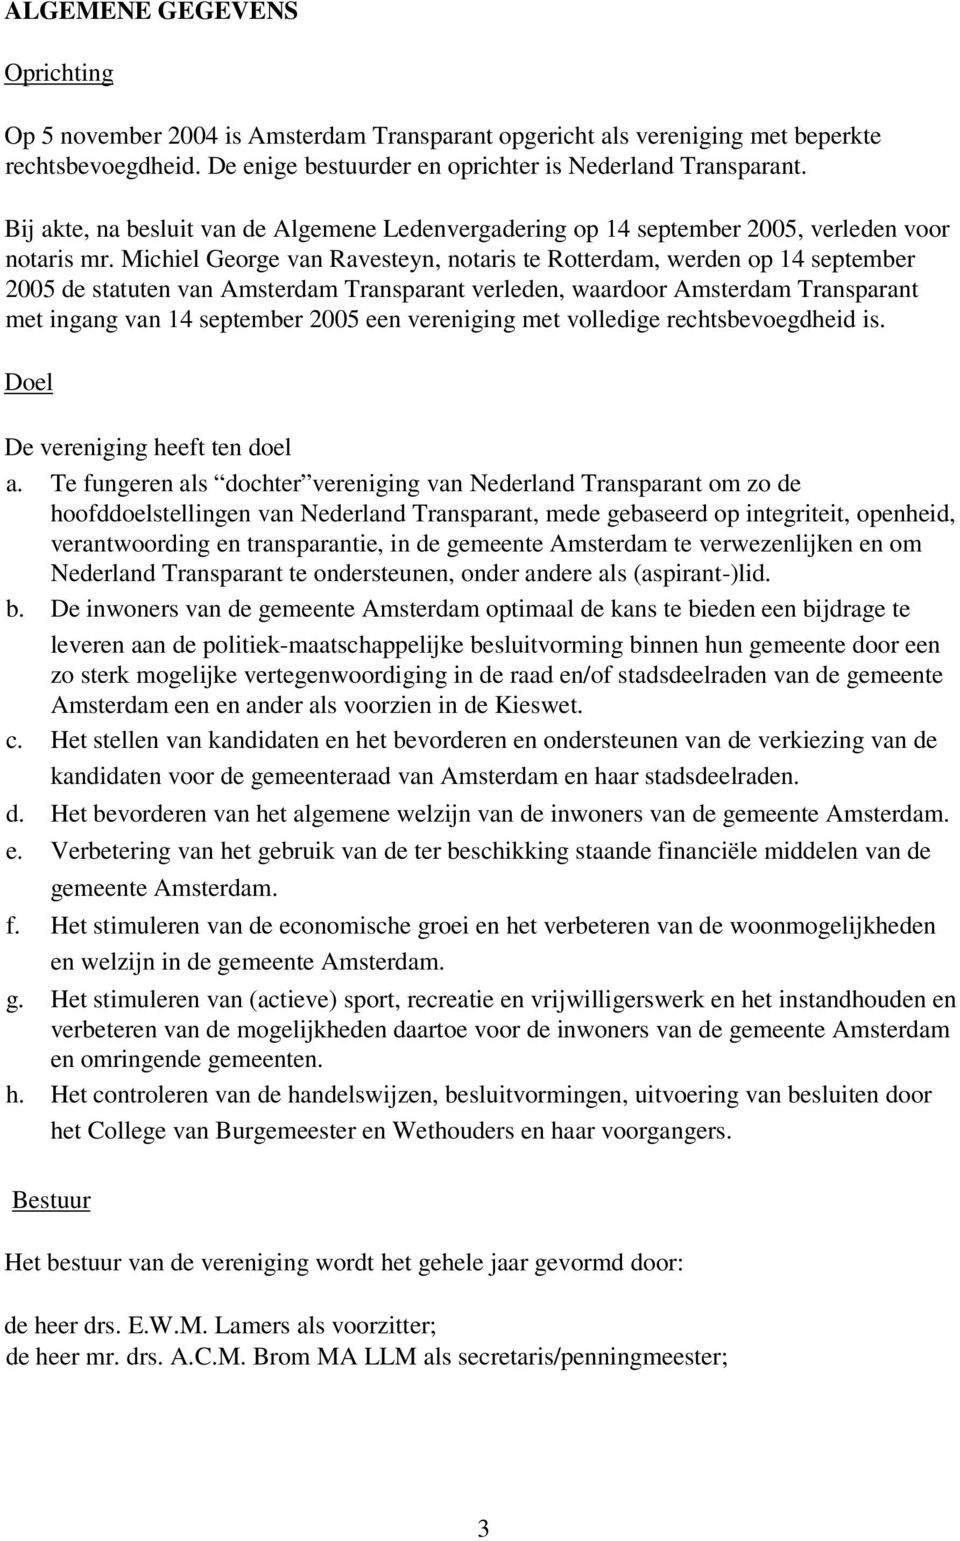 Michiel George van Ravesteyn, notaris te Rotterdam, werden op 14 september 2005 de statuten van Amsterdam Transparant verleden, waardoor Amsterdam Transparant met ingang van 14 september 2005 een